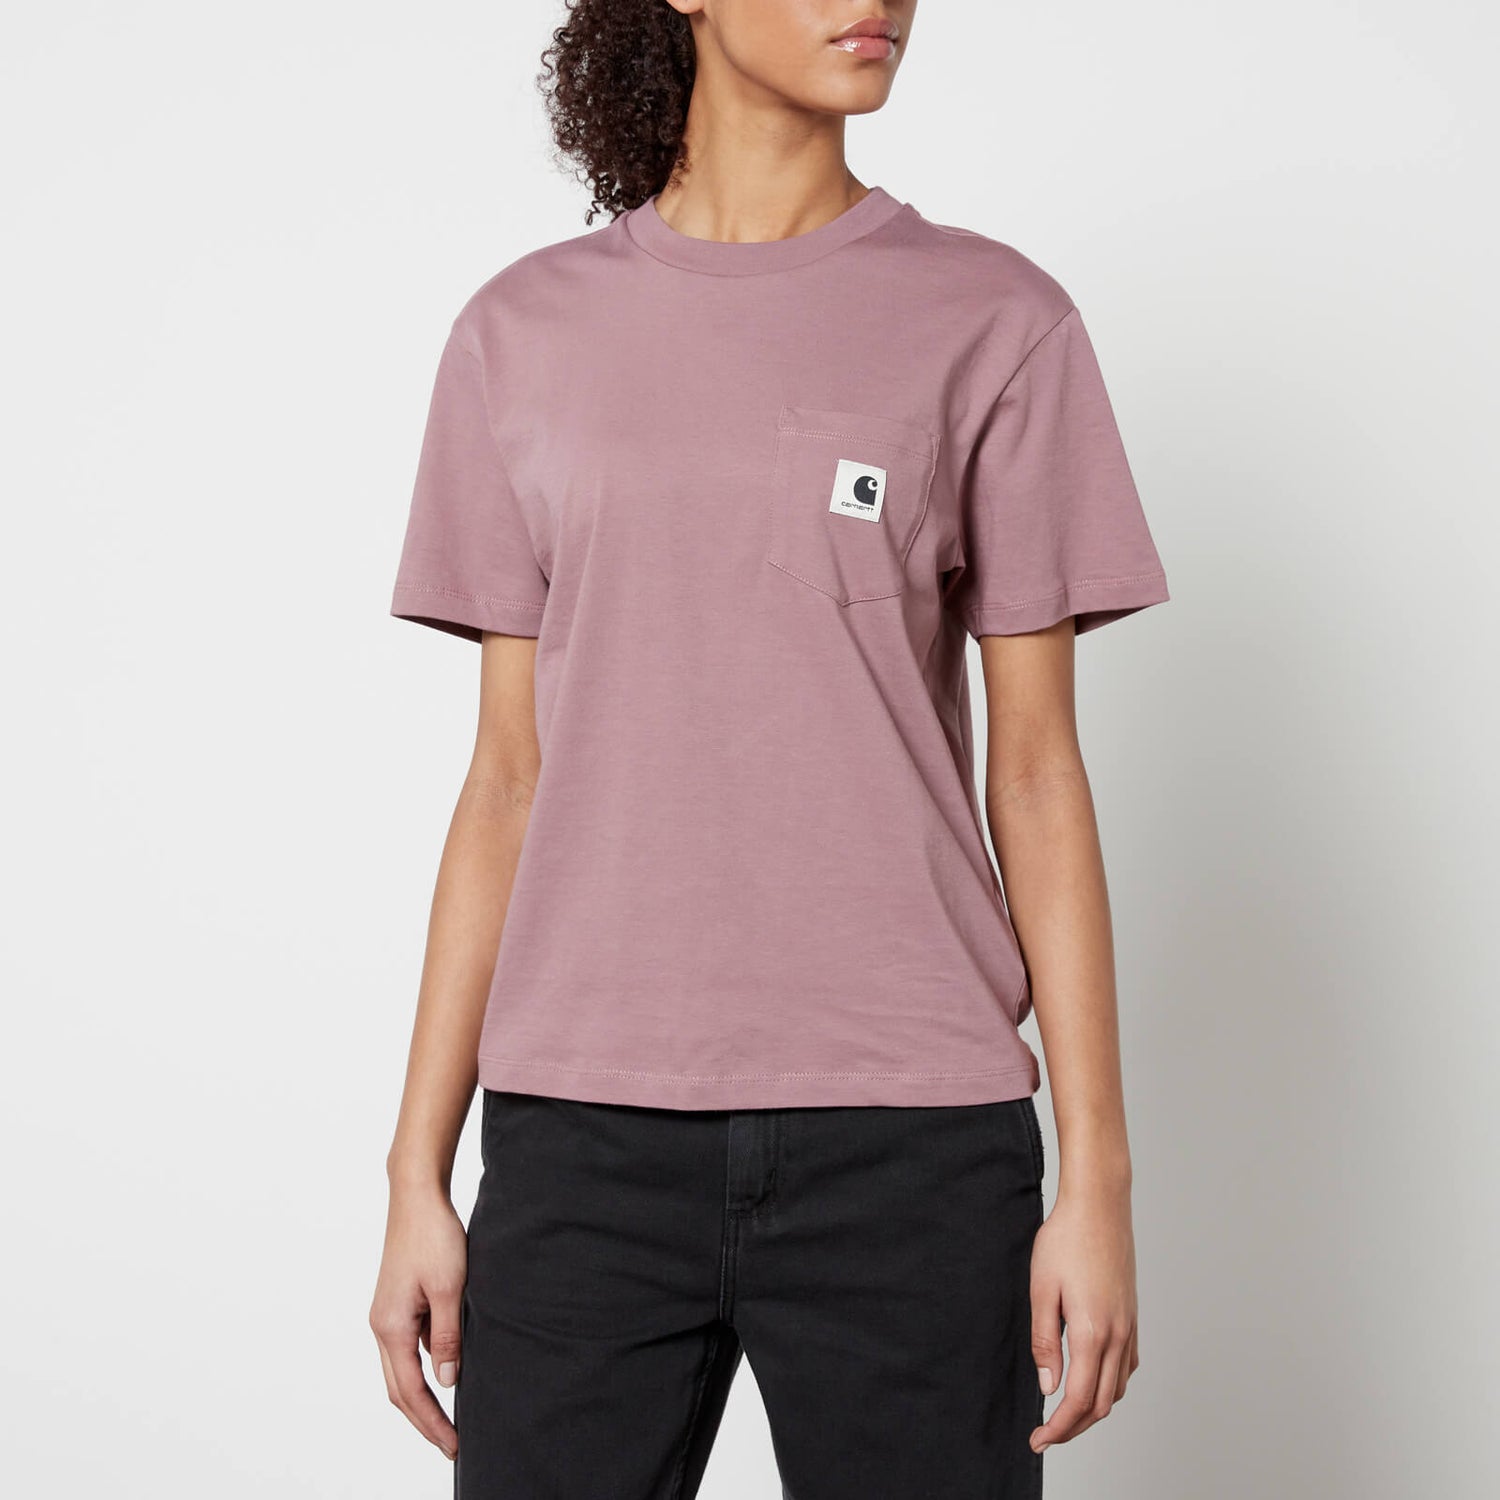 Carhartt WIP Pocket T-Shirt - L